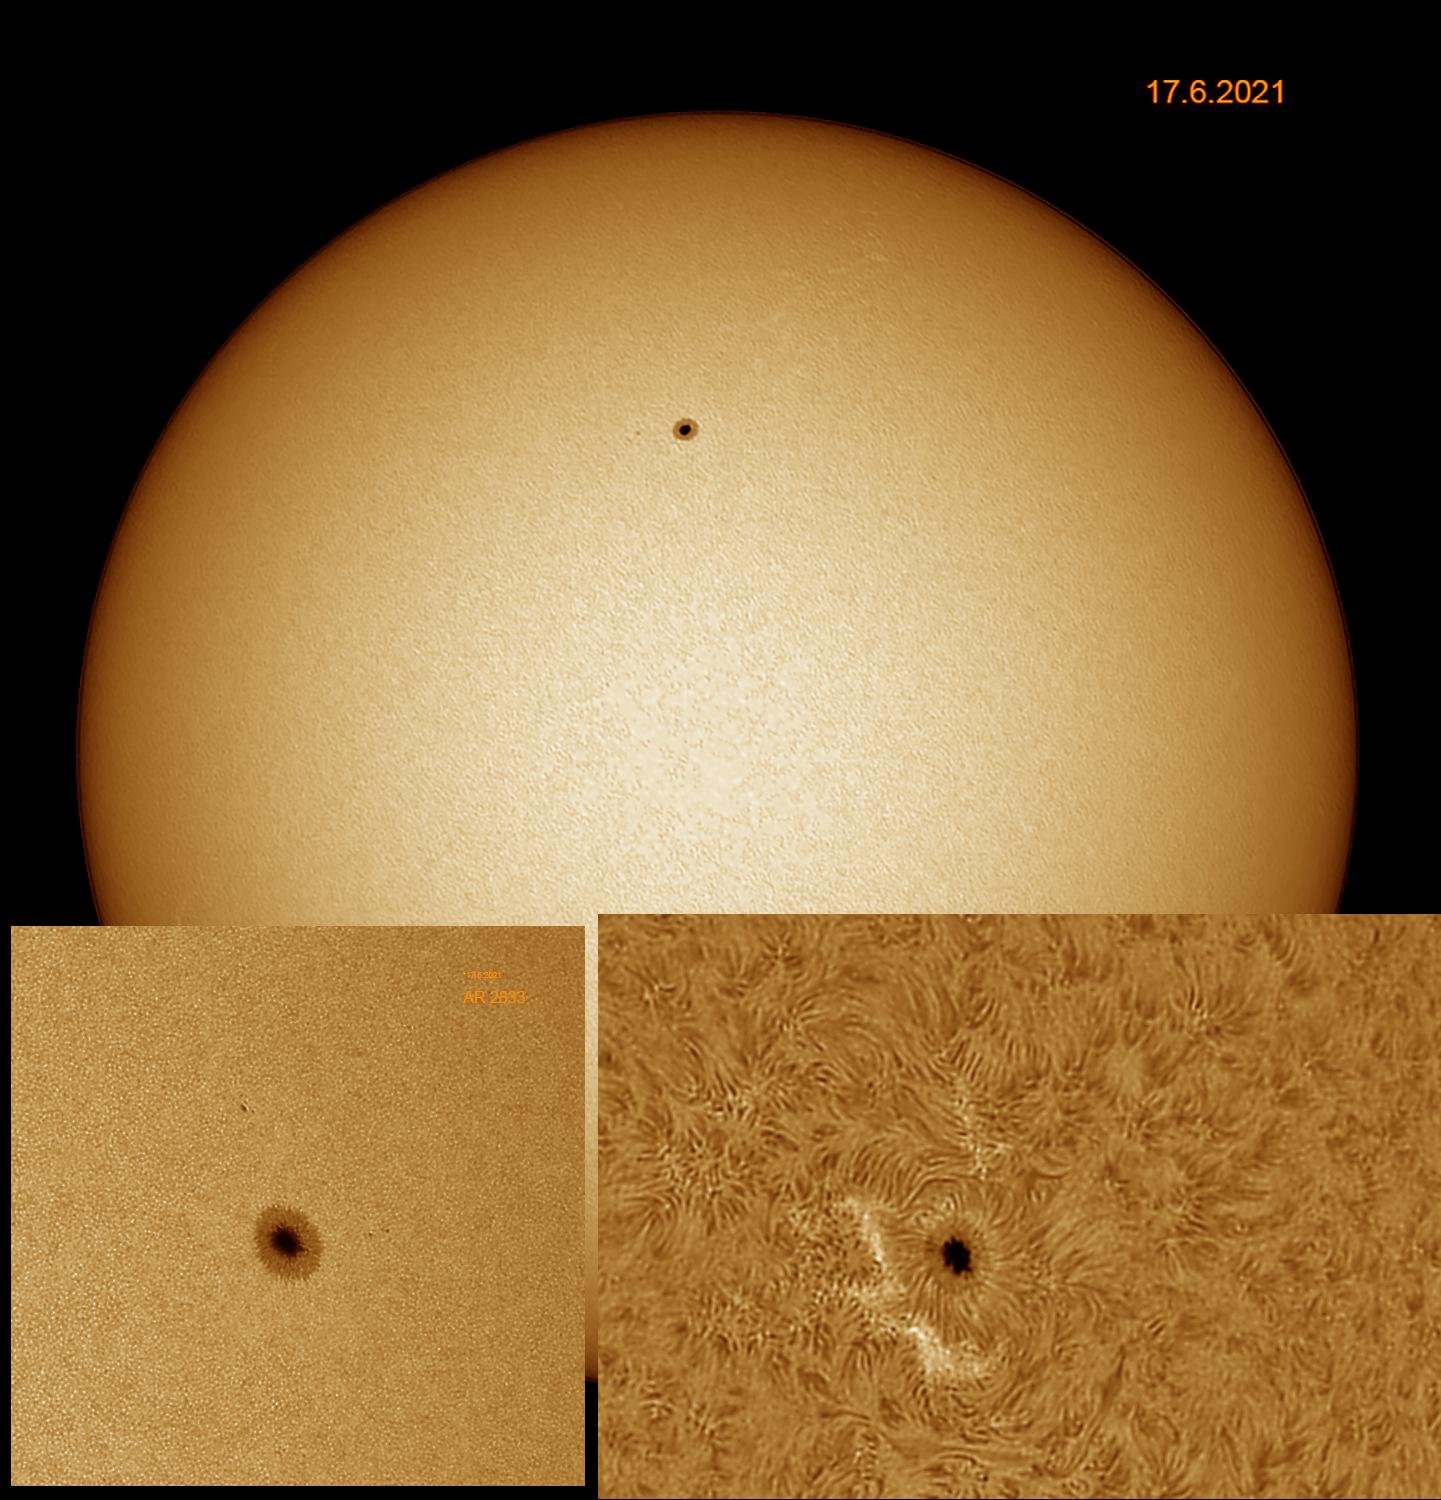 Sonne am 17.6.2021 Weißlicht vs. H-Alpha, Aktive Region 2833 